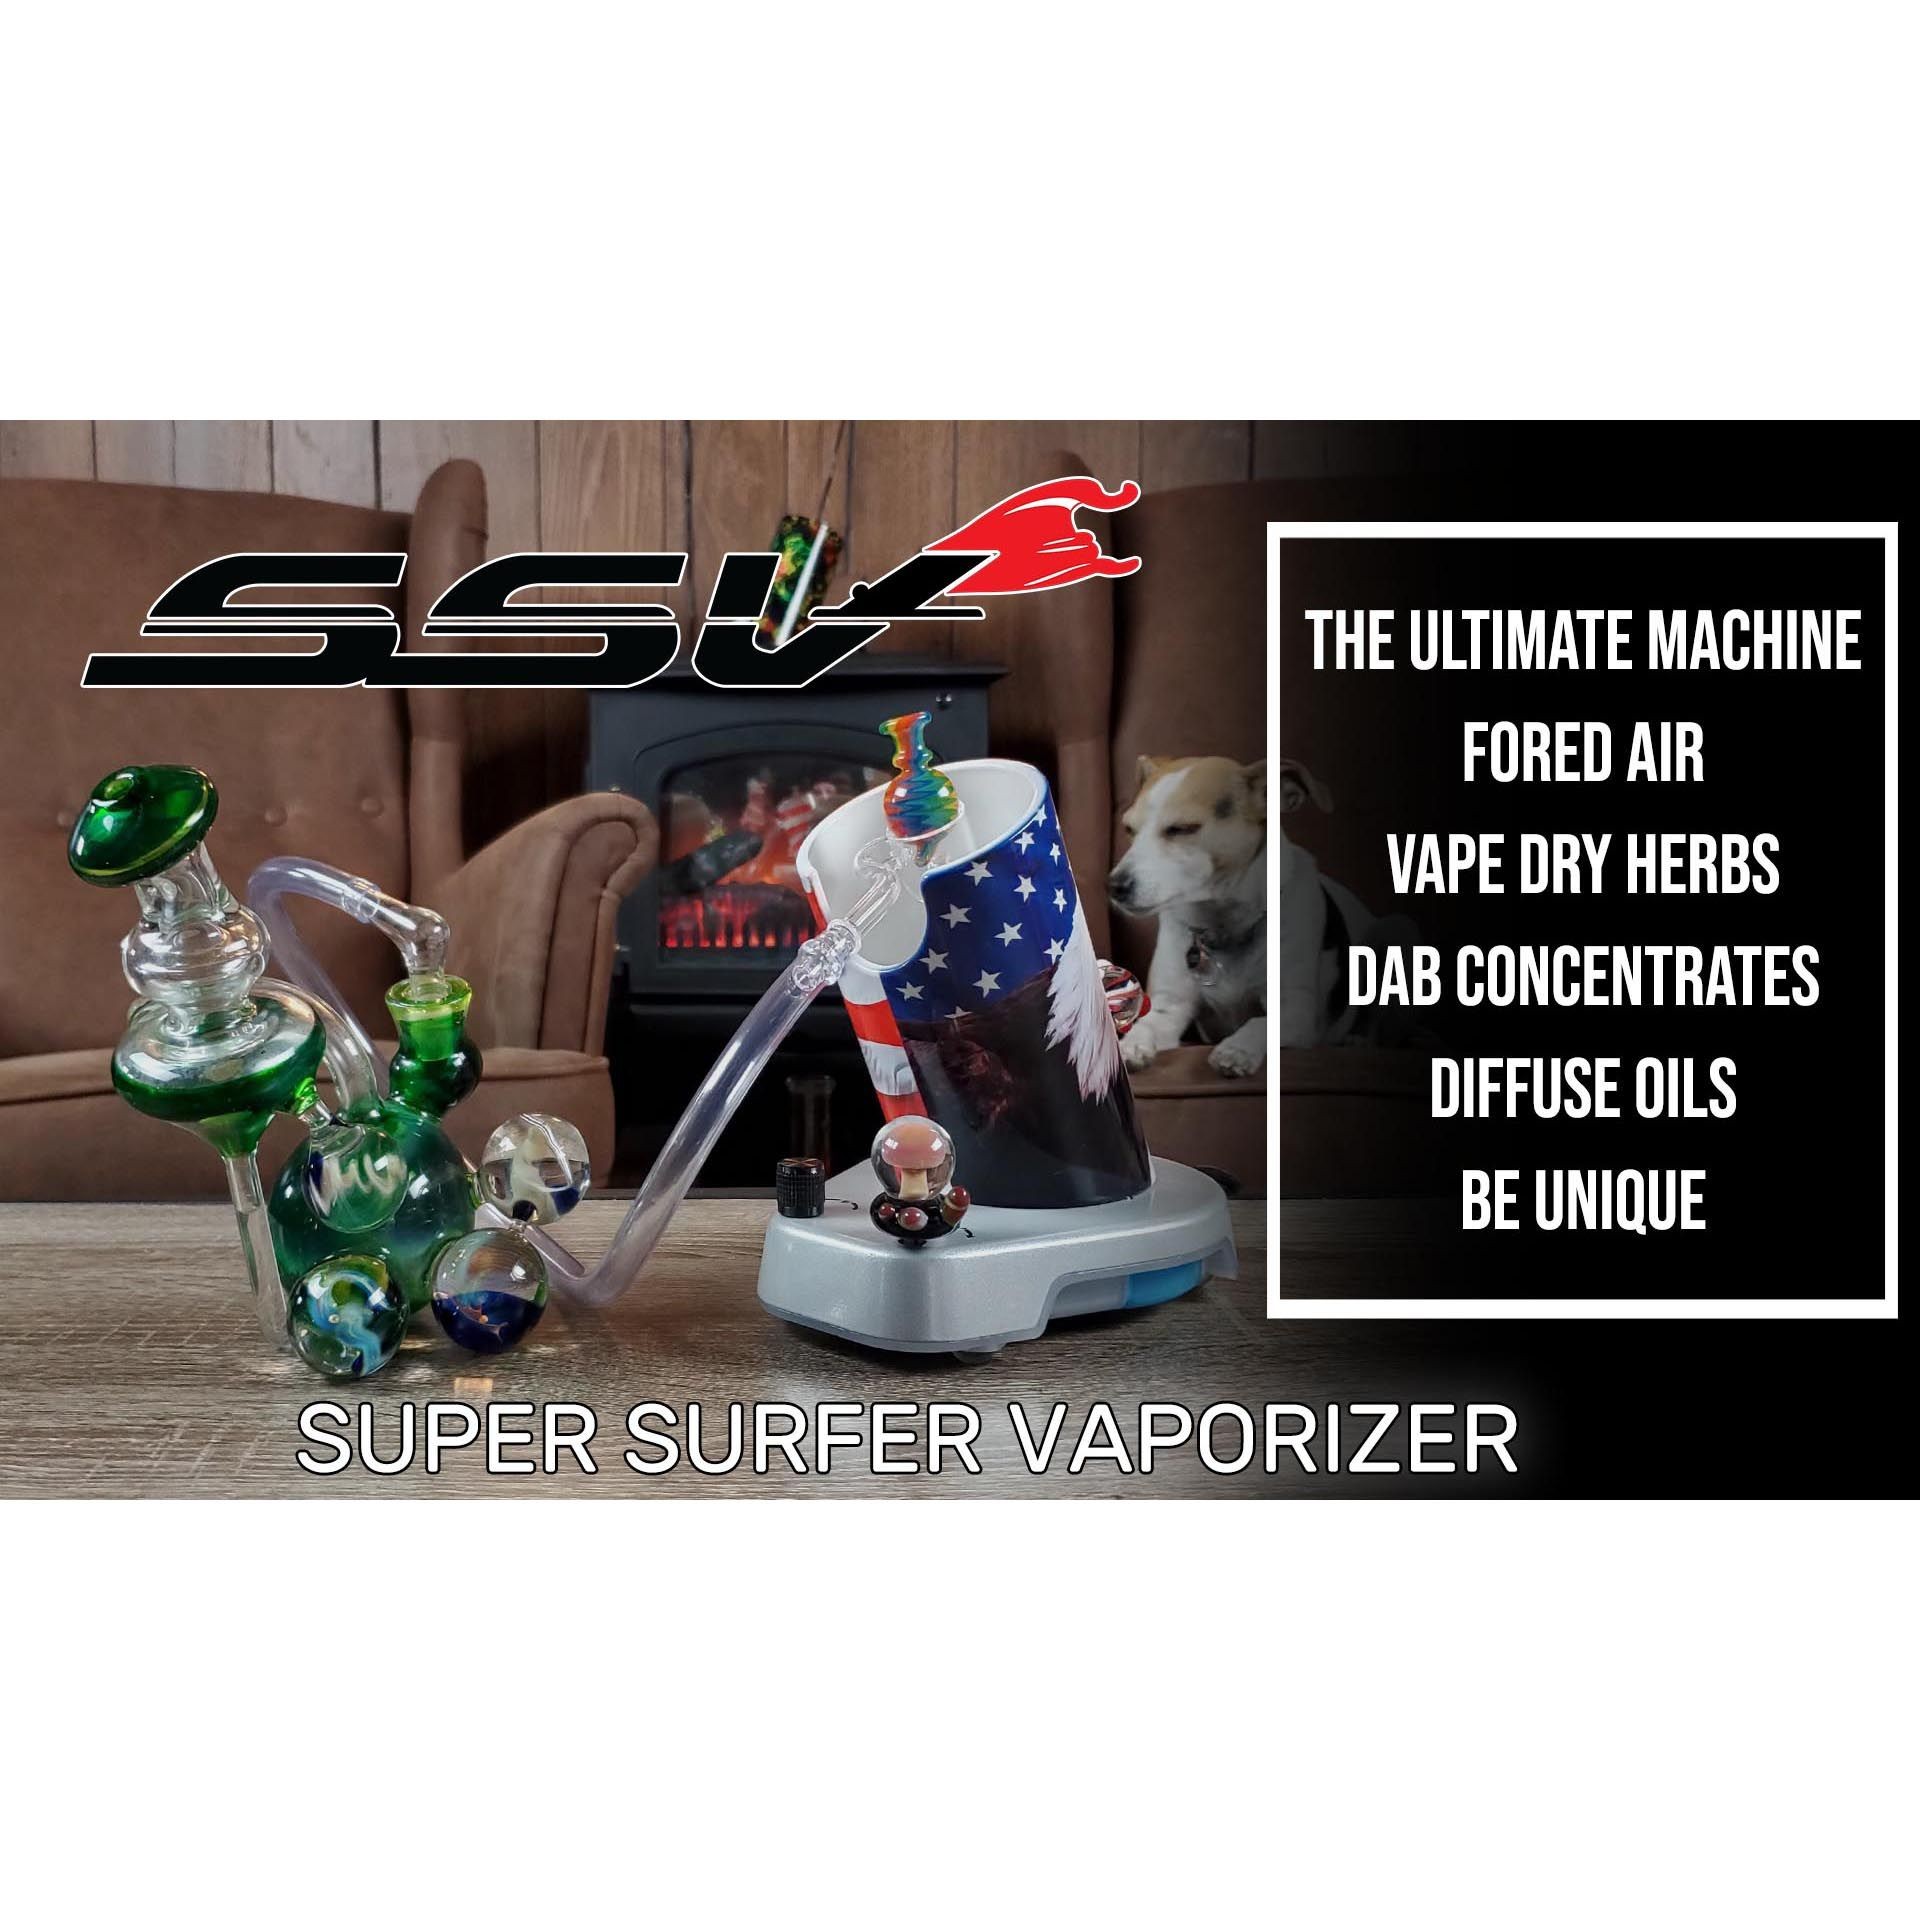 ELEV8 LIFE BRANDS (7TH FLOOR - ELEV8 PREMIER): Super Surfer Vaporizer V2